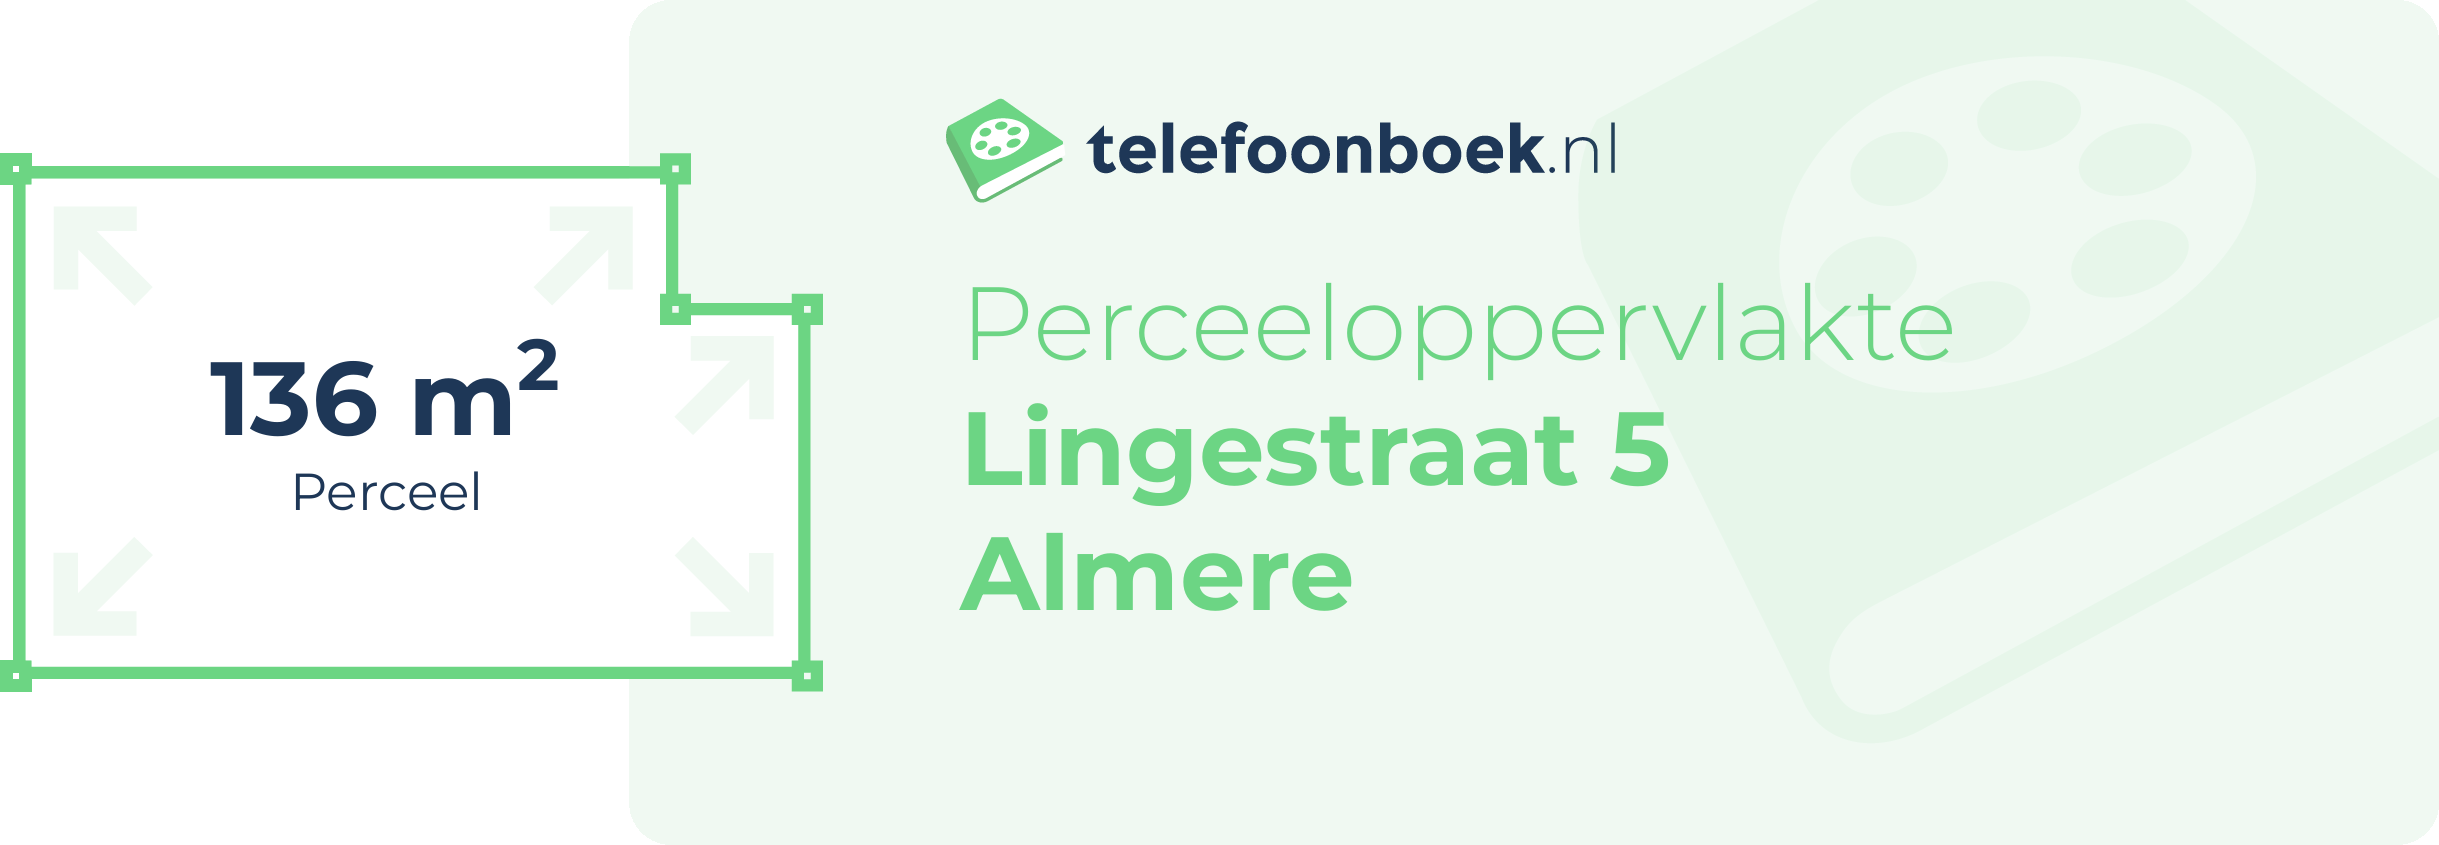 Perceeloppervlakte Lingestraat 5 Almere